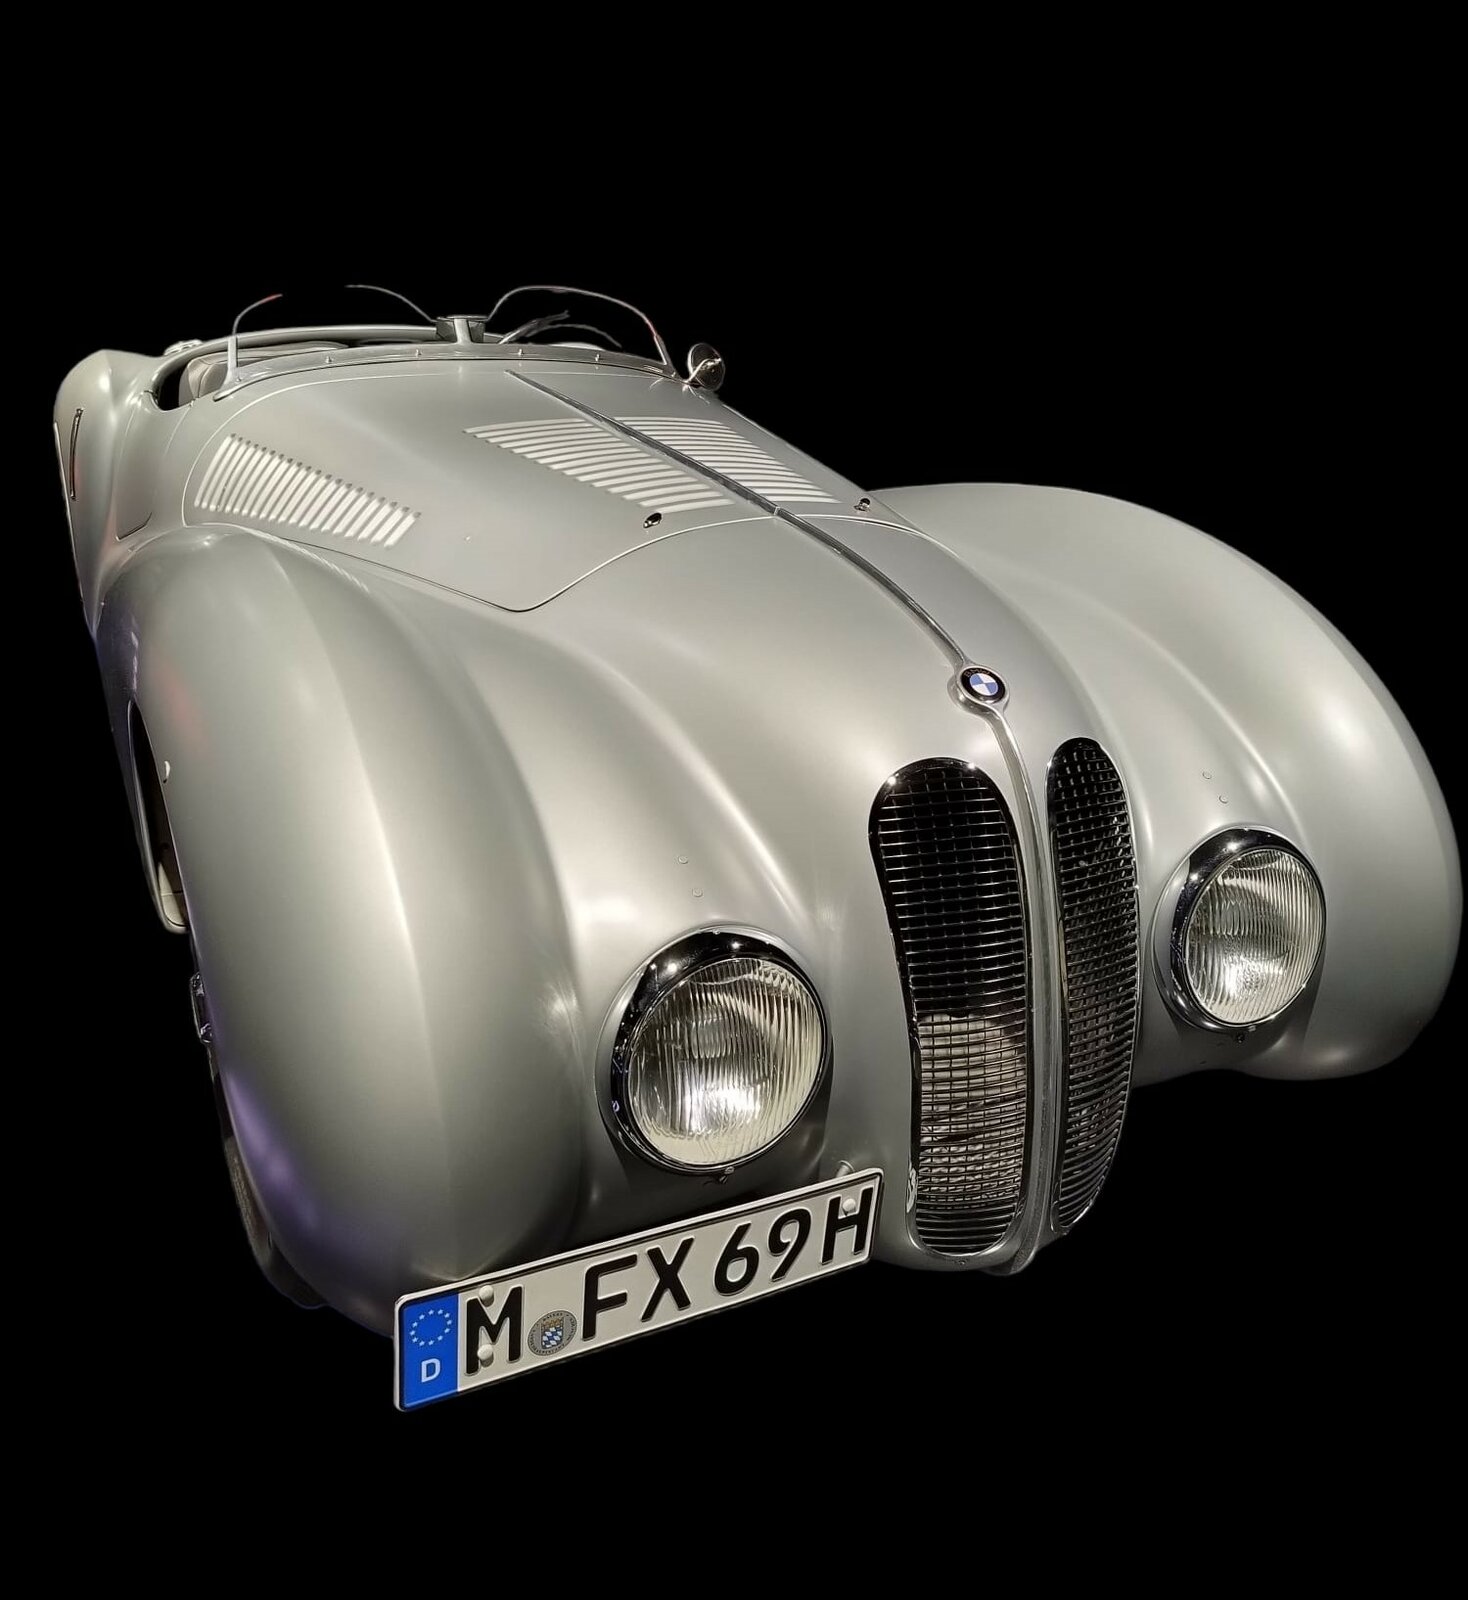 Der Erfolg der Marke BMW im Rennsport begann früh. Kurz nach Beginn der Produktion des BMW 328 im Jahr 1936 nahm BMW mit dem Wagen an Rennen teil. Der Sechszylinderreihenmotor mit einem Hubraum von 1971 cm³ leistete bis zu 136 PS und verhalf dem Auto mit der leichten, aerodynamischen, Aluminiumkarosserie zu etlichen Rennsiegen. Das Auto wog nur erstaunliche 700 Kilogramm. Viele andere Autohersteller übernahmen die eleganten, geschwungenen, Kotflügel und das sich verjüngende Heck. Bei der Mille Miglia des Jahres 1940 wurde dieses Auto Dritter. Gefahren wurde der Wagen von Adolf Brudes (*1899 +1986) und Ralph Roese (*1900 +1950). Sieger wurde ebenfalls ein BMW 328, allerdings mit einer Coupe-Karosserie der Carrozzeria Touring/Mailand. Am Steuer des Siegerwagens saß Huschke von Hanstein (*1911 +1996) und Walter Bäumer (*1908 +1941). BMW-Museum München im Juli 2022.